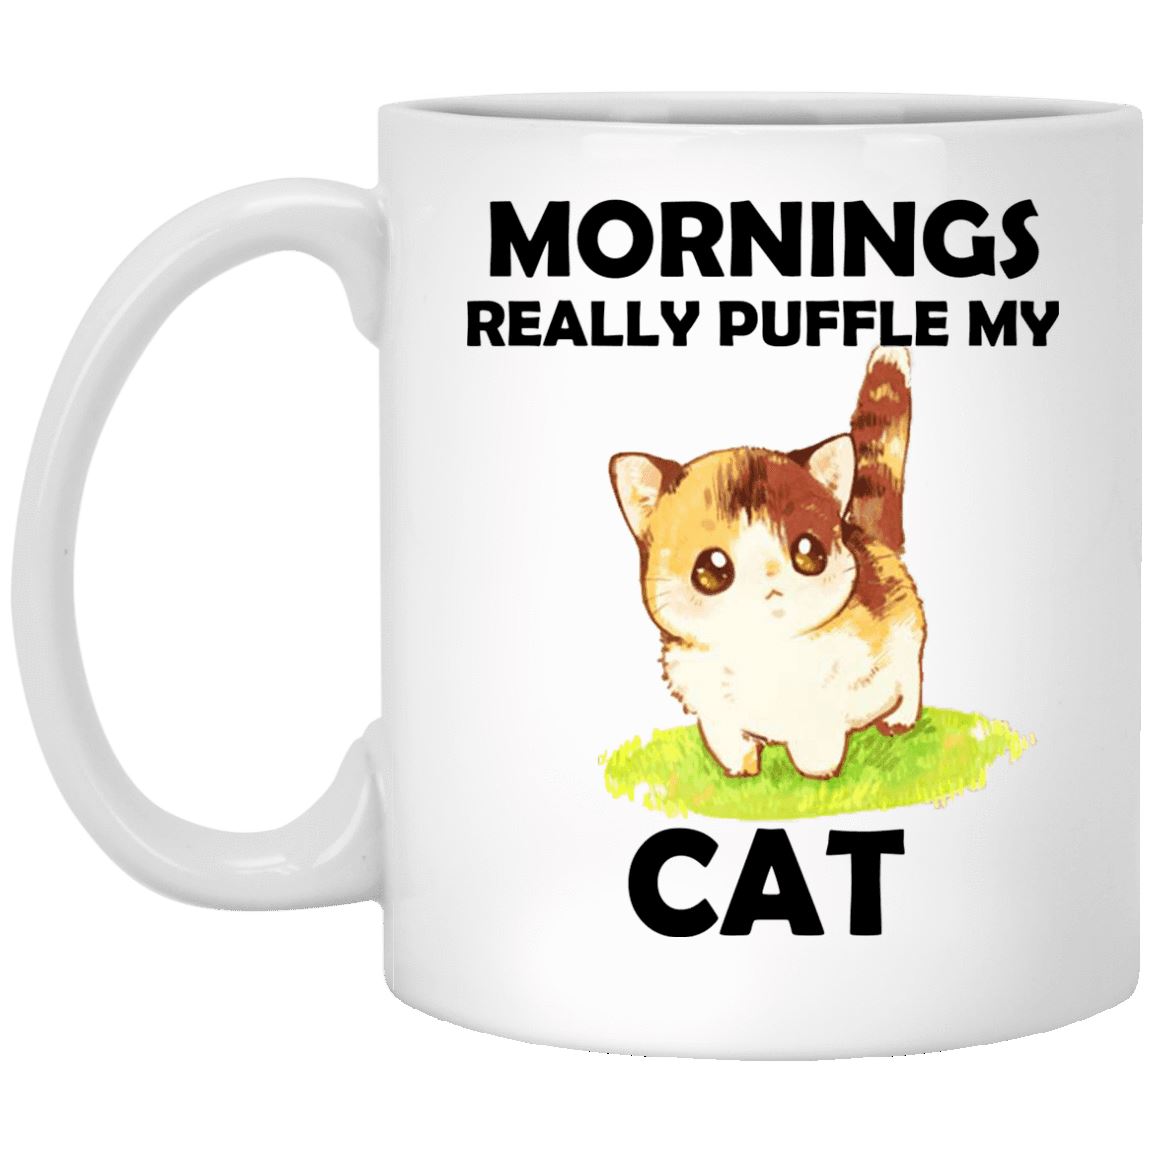 Cat Mug - Mornings Really Puffle My Cat - CatsForLife